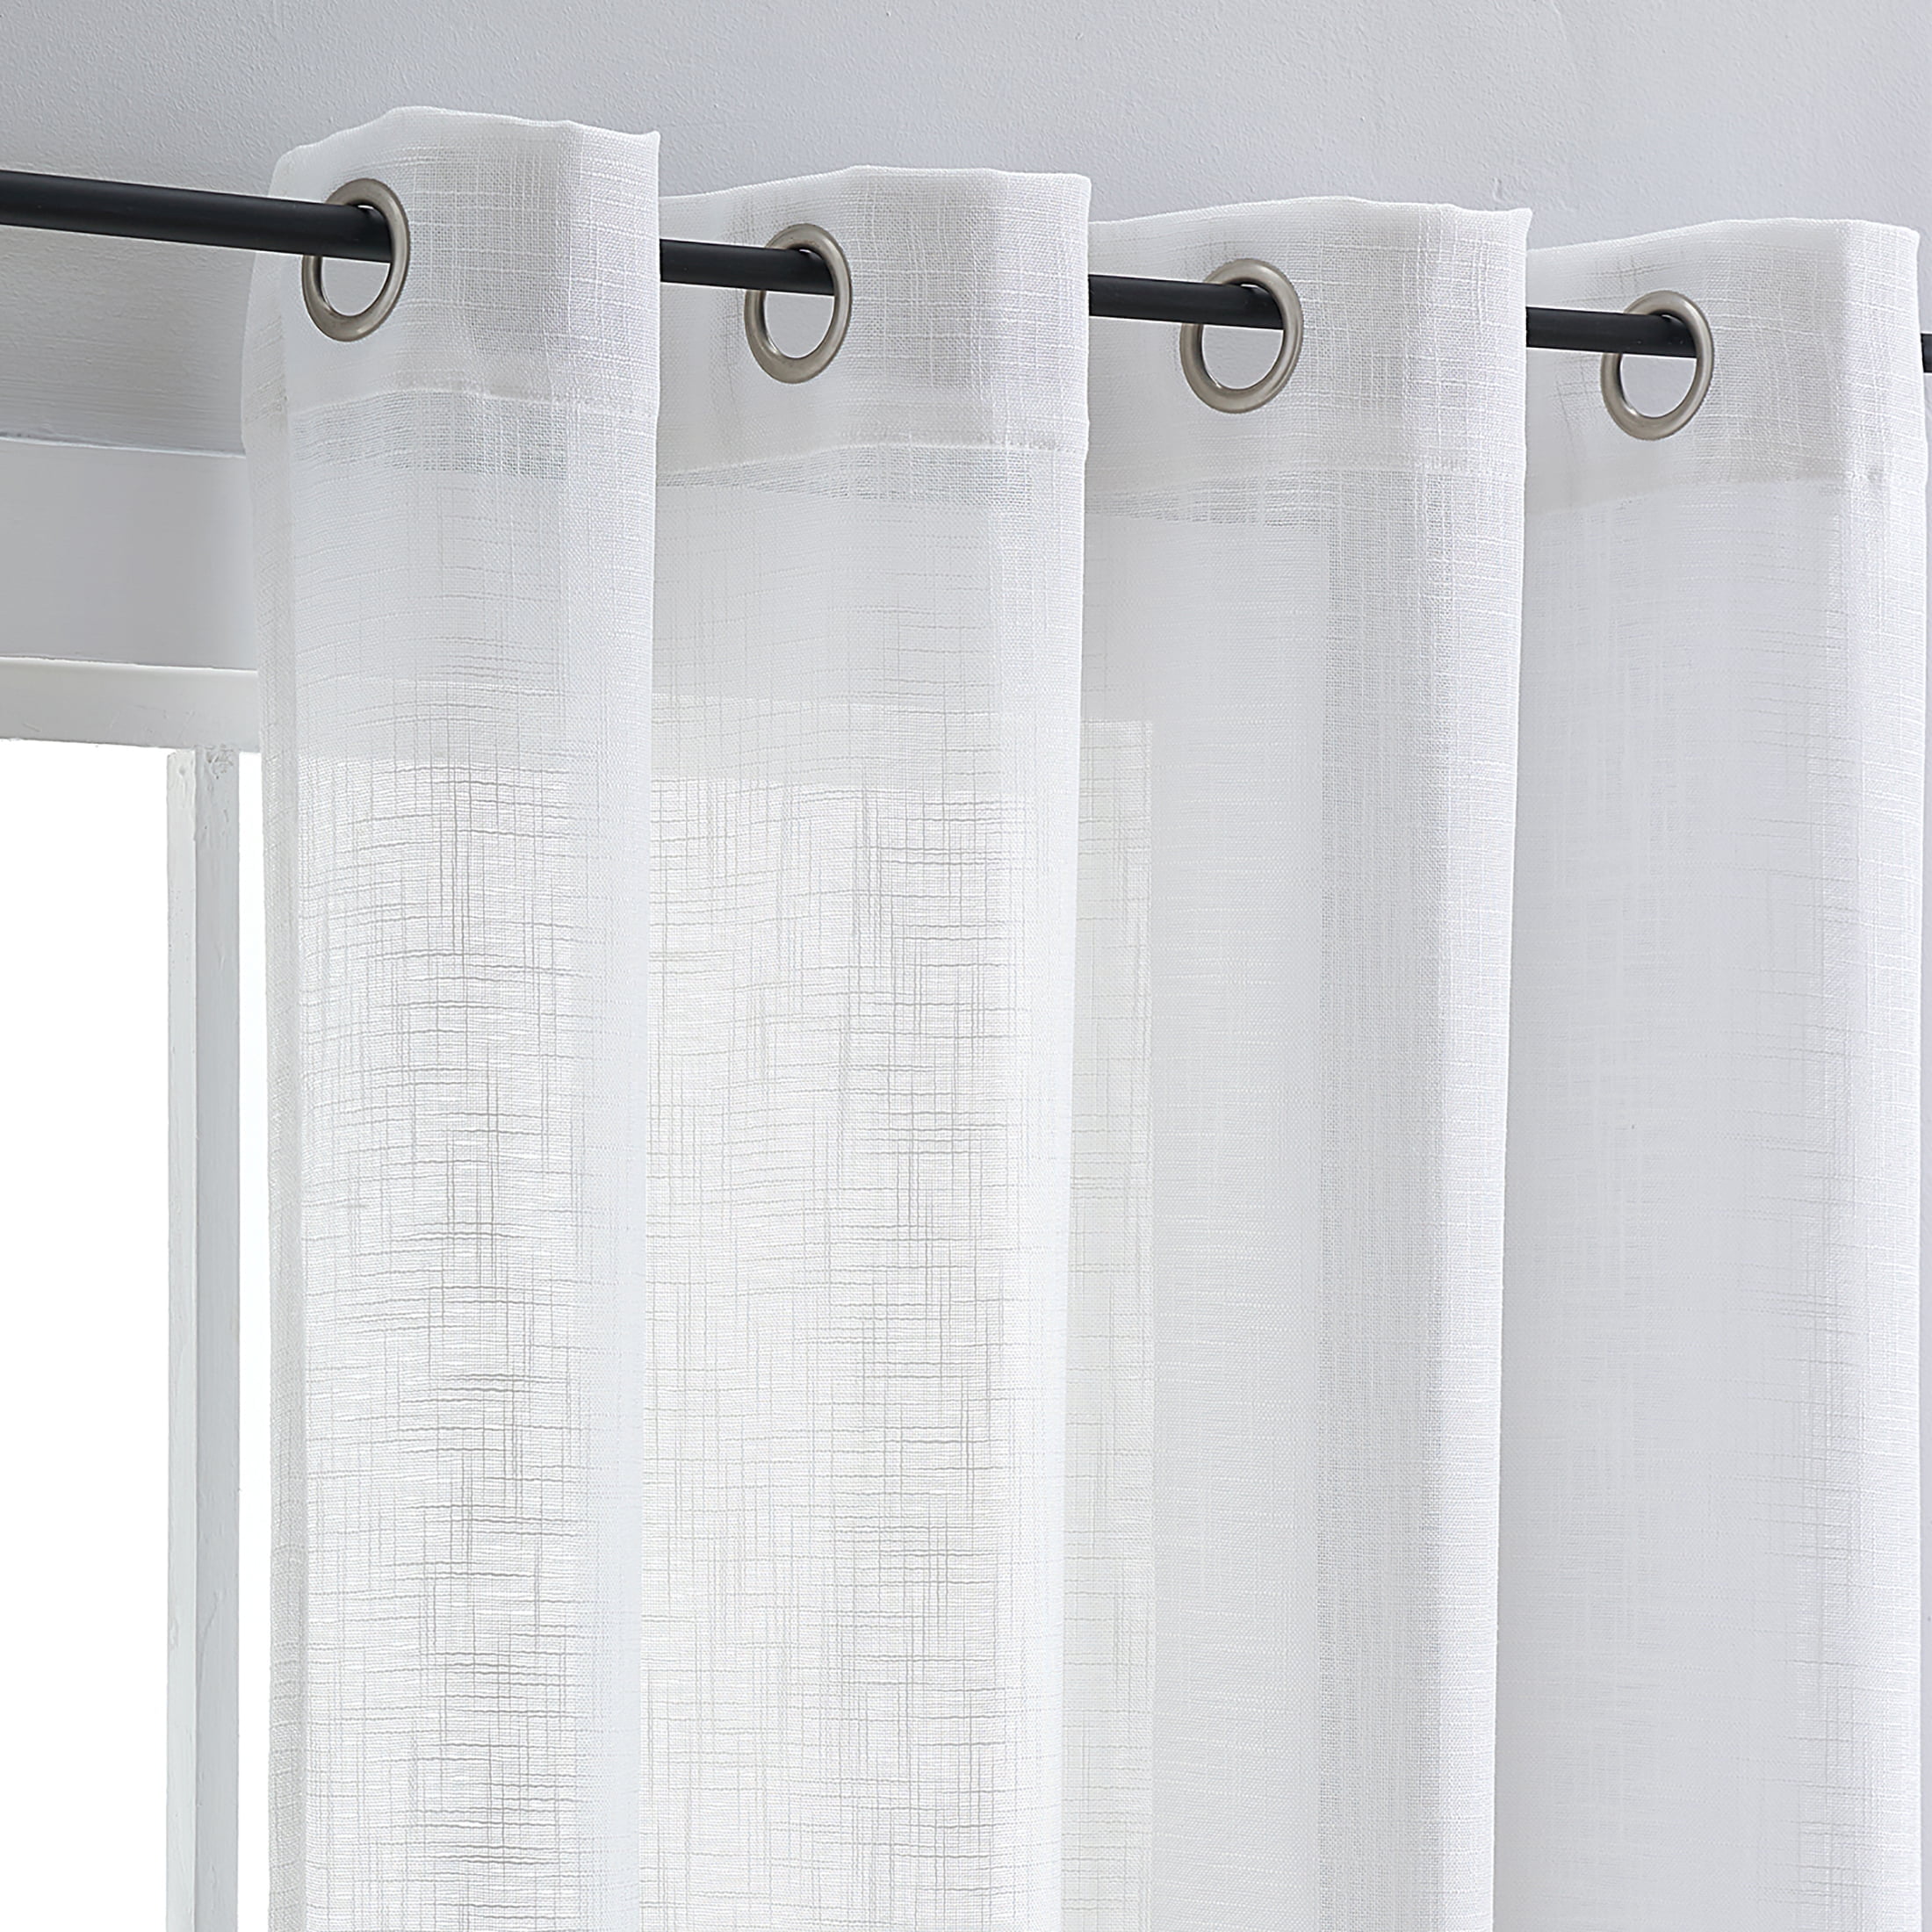 Exultantex Semi Sheer Curtains for Living Room Linen Textured Rustic Grey  Panels, 52W x 84L, 2 Pcs, Grommet Top 